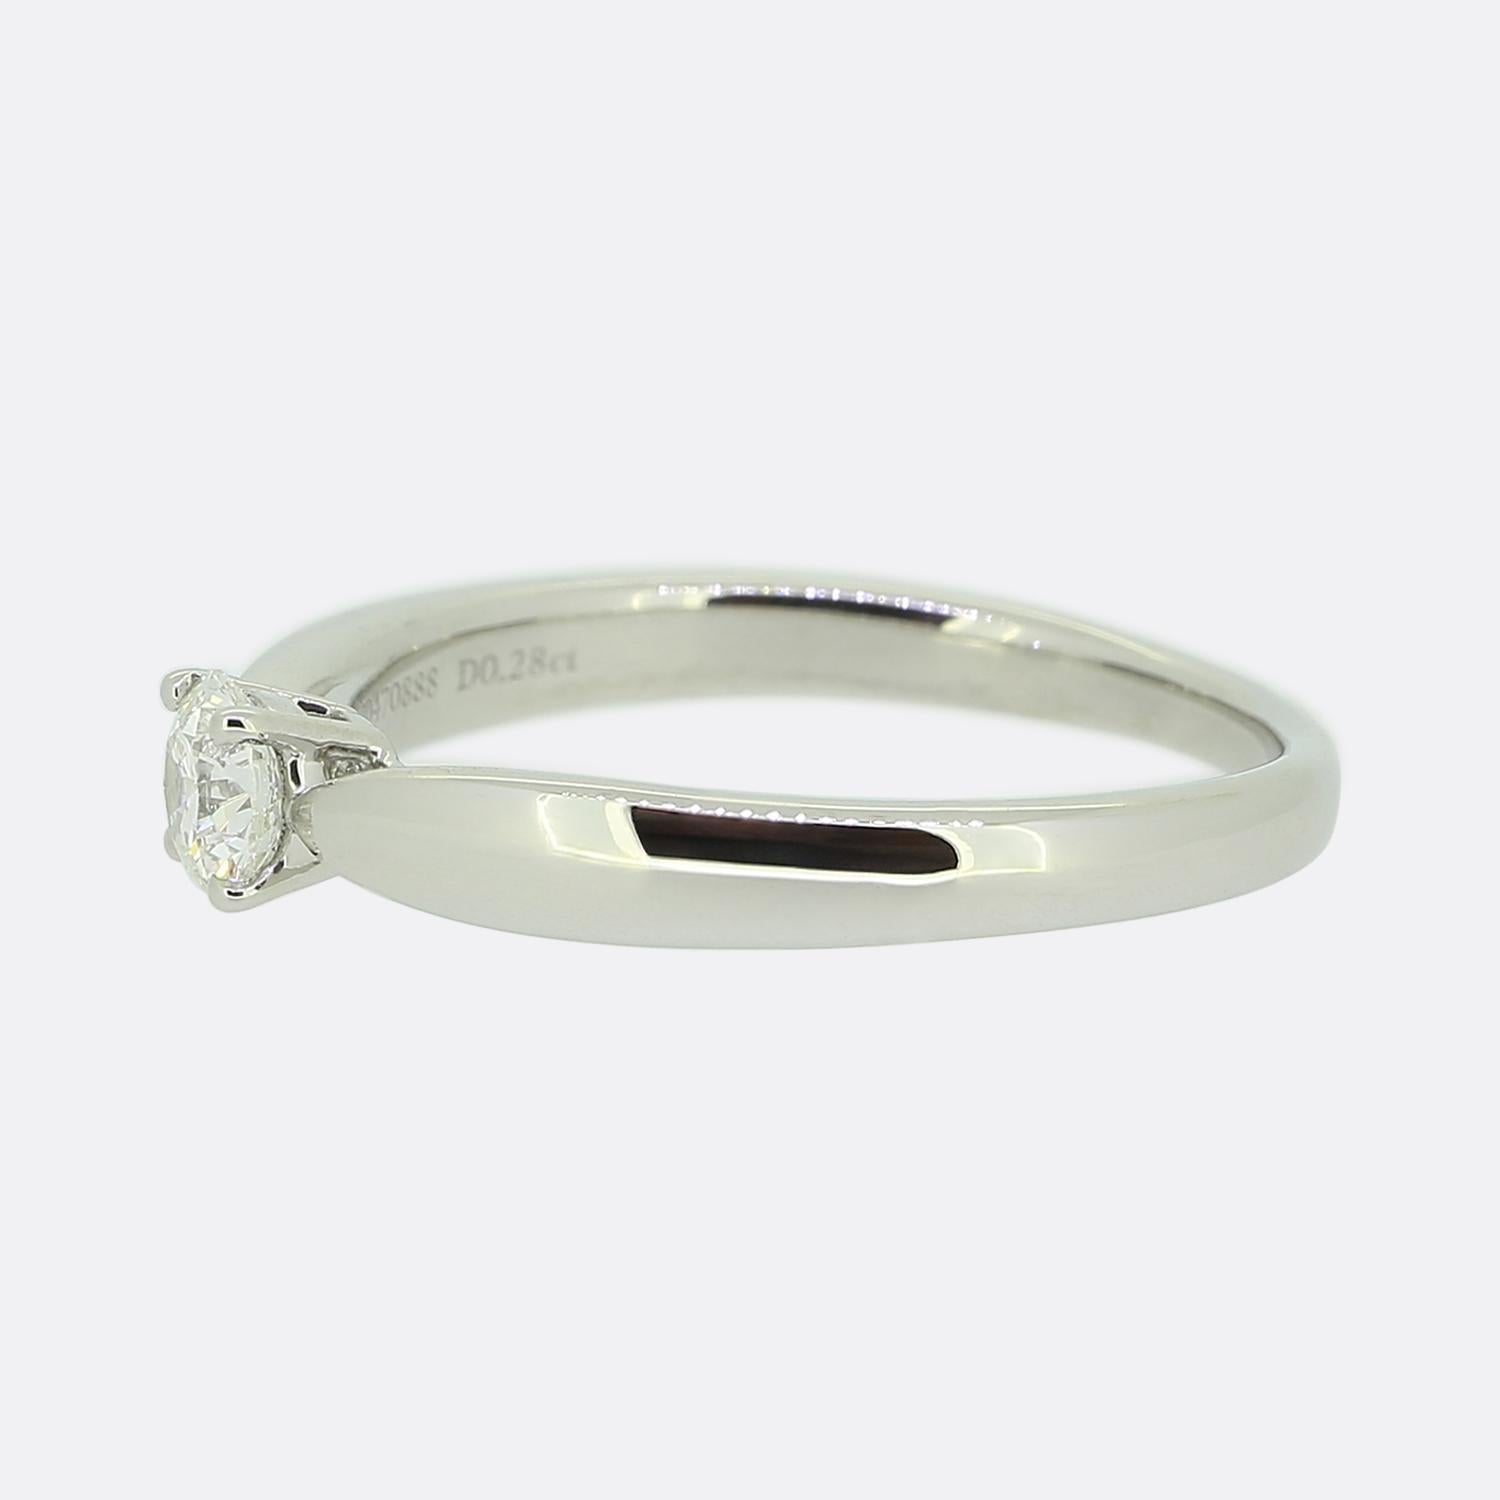 Nous avons ici une magnifique bague solitaire en diamant du créateur de bijoux de renommée mondiale, Tiffany & Co. La pierre centrale est un charmant diamant rond de 0,28 carat taillé en brillant, serti sur l'anneau gradué emblématique de